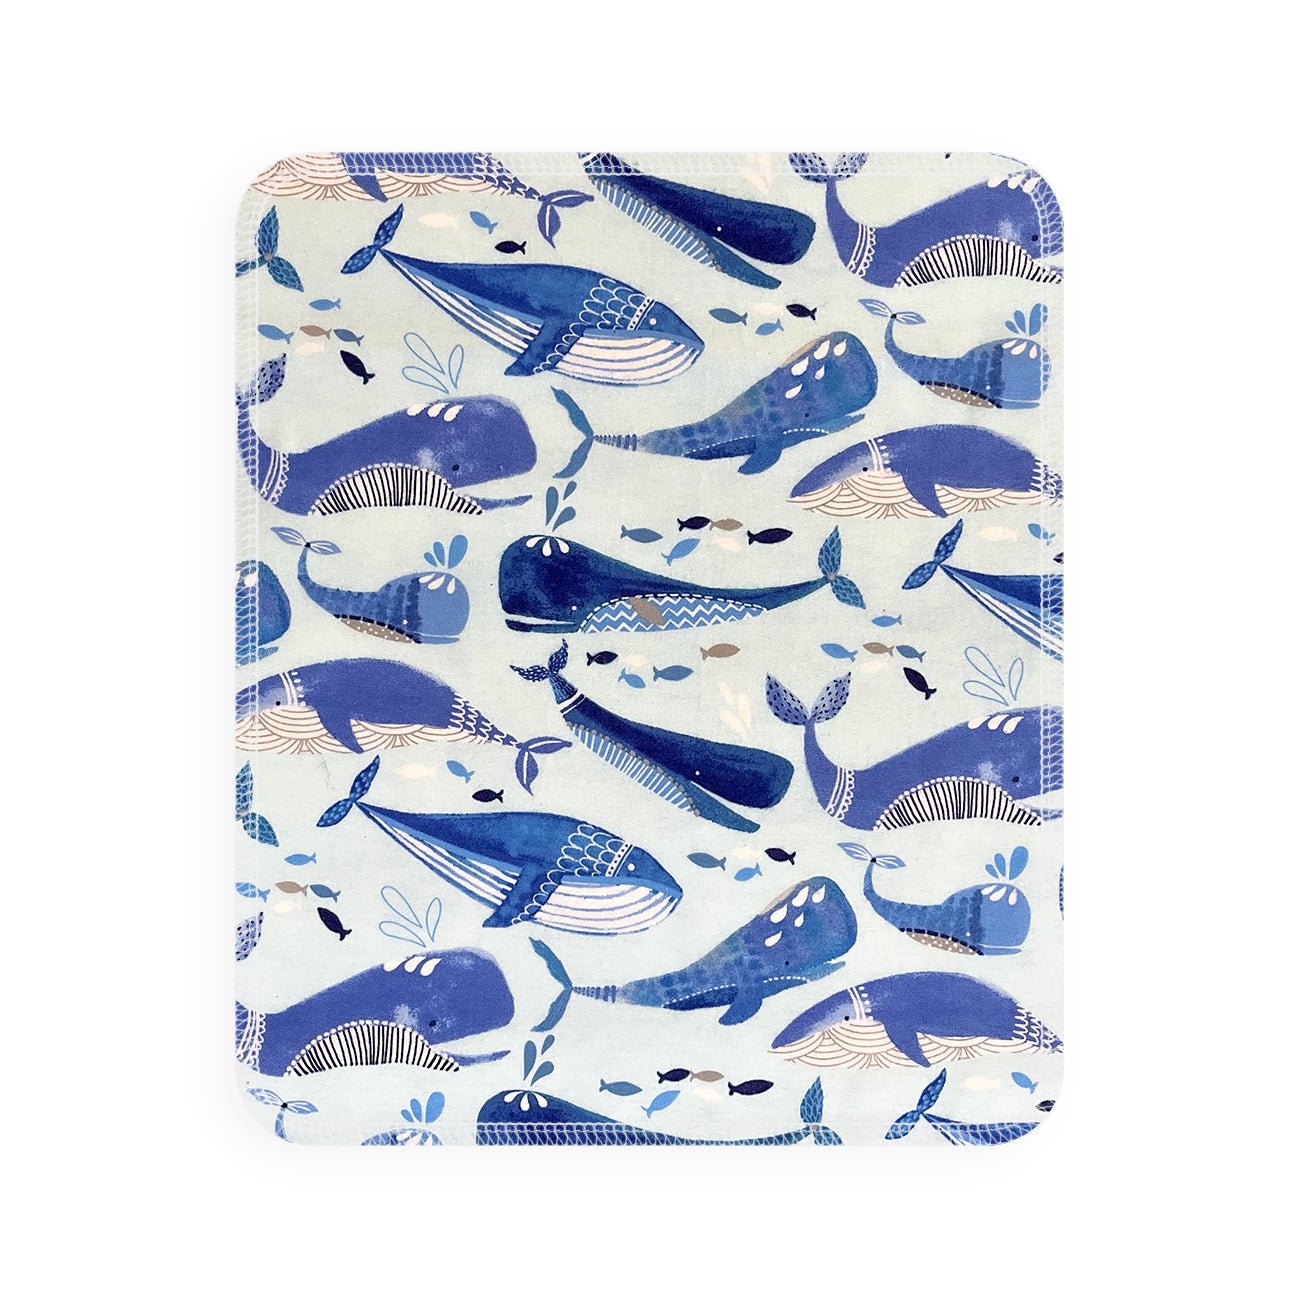 Marley's Monsters UNpaper® Towel Single: Whales